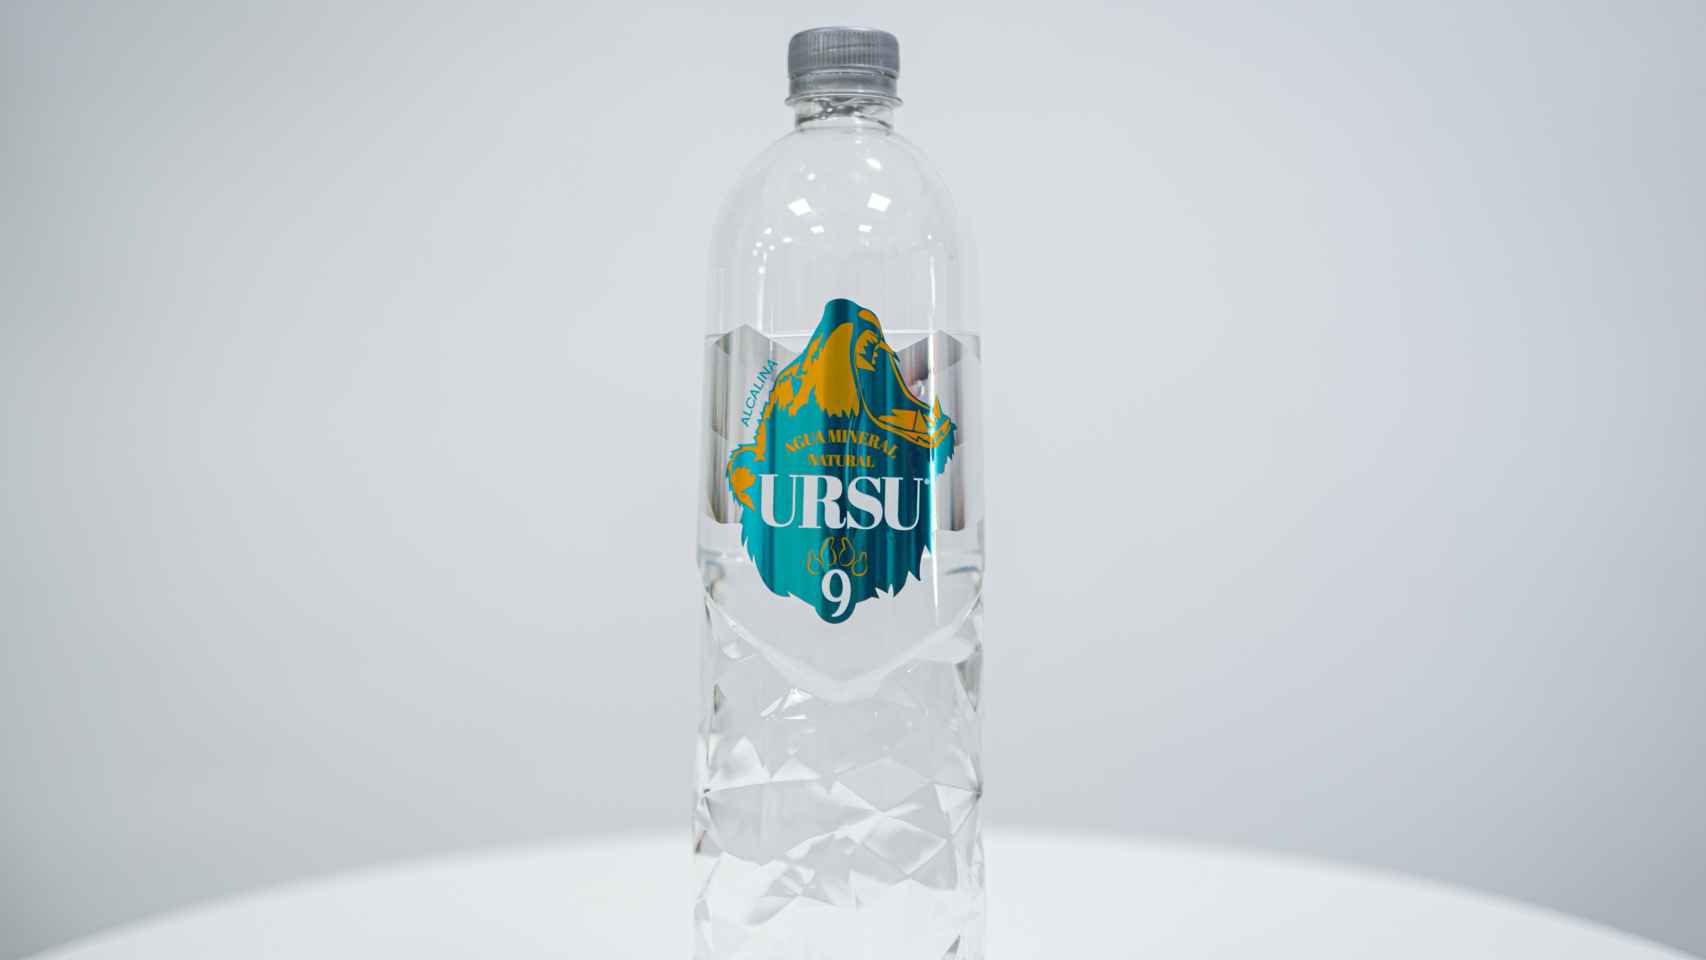 La botella de litro y medio de URSU9.